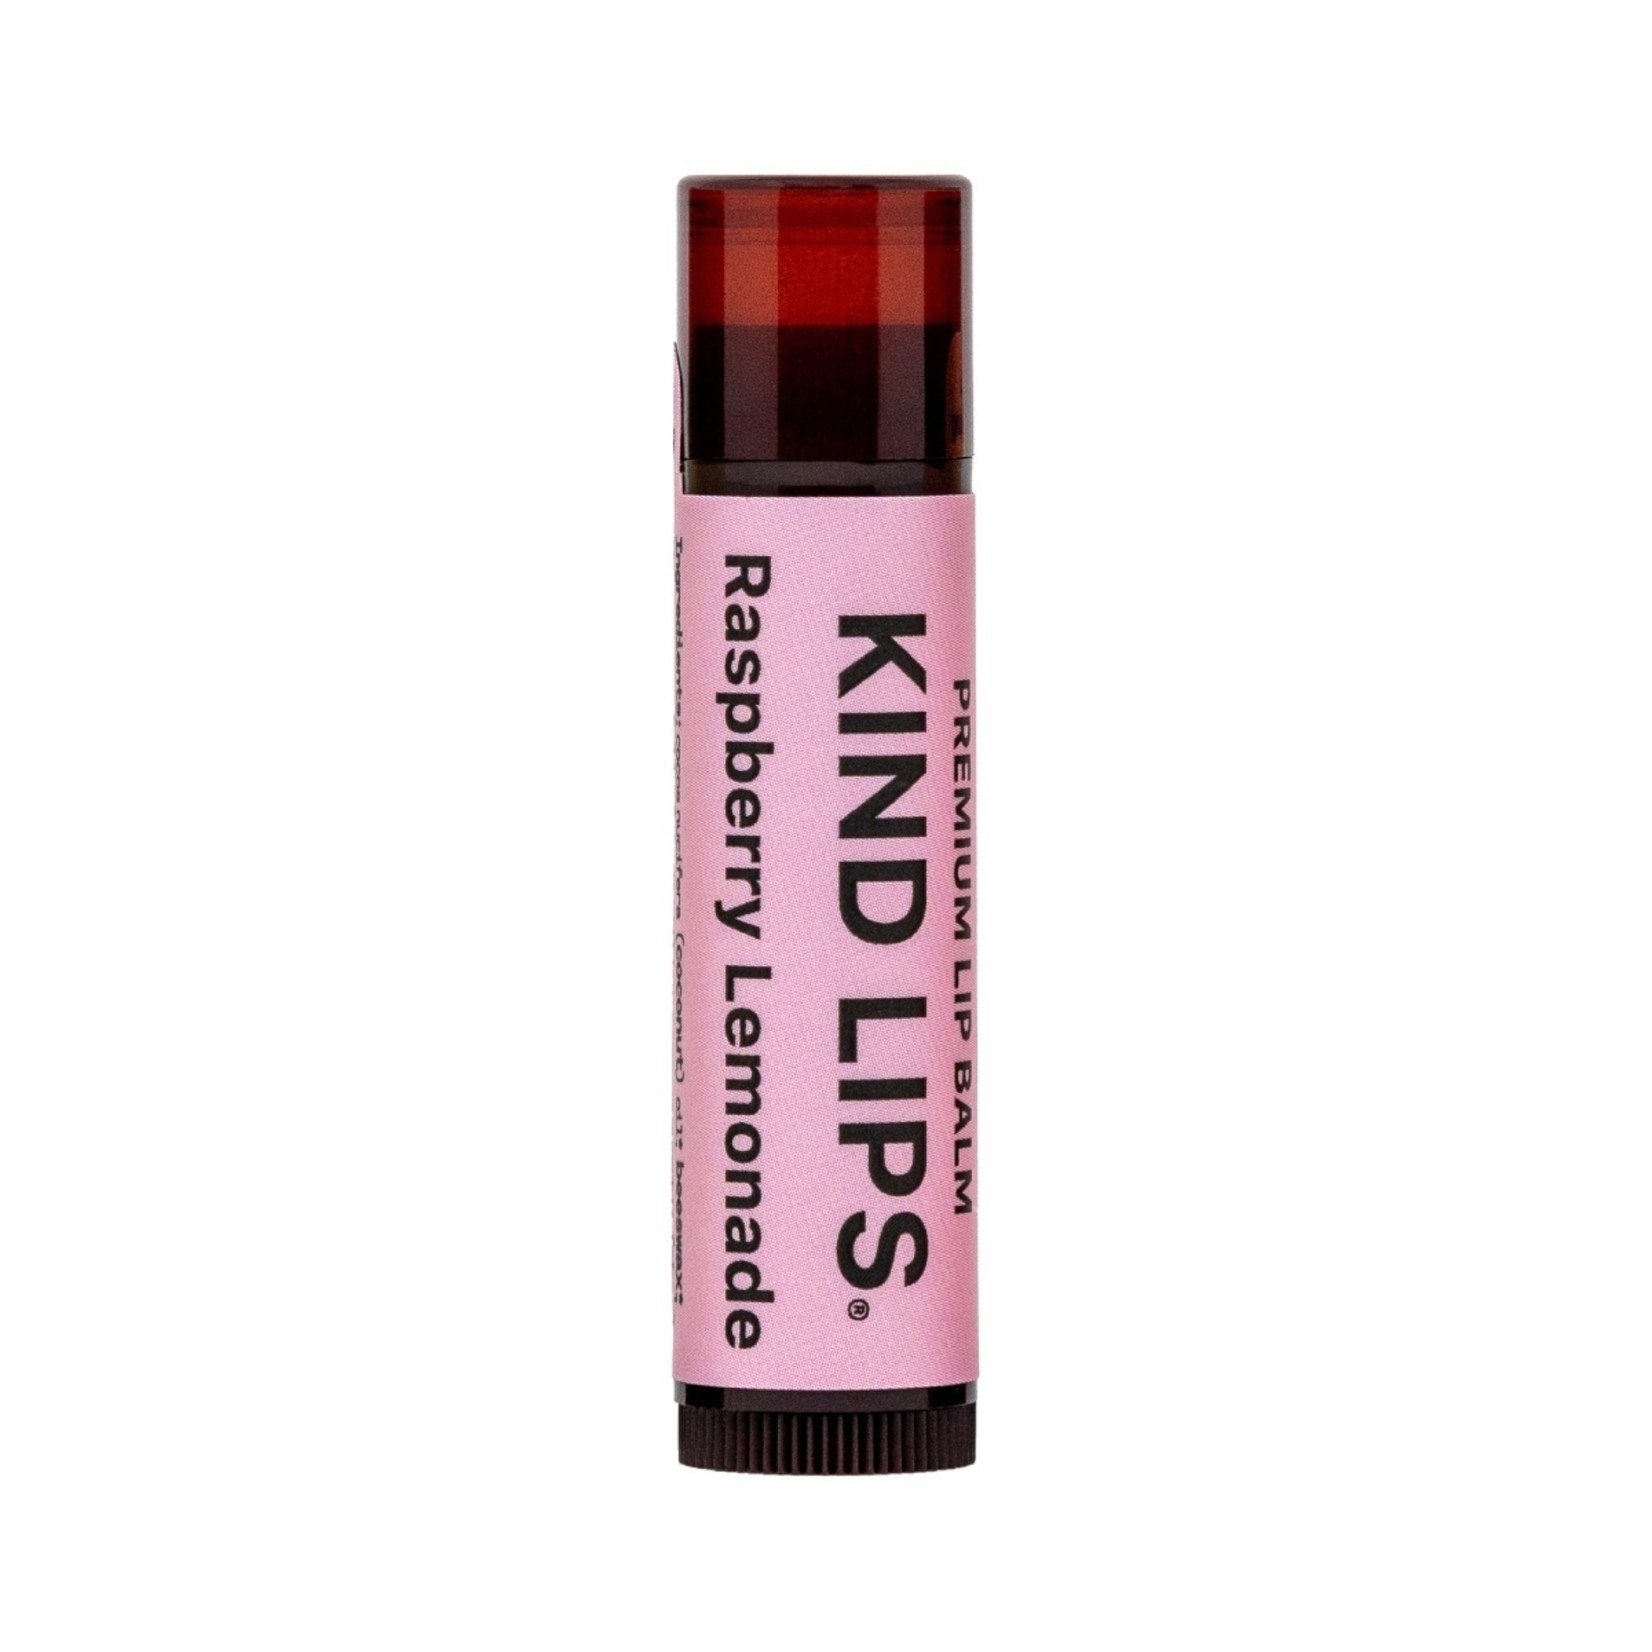 Kind LIps Raspberry Lemonade Kind Lips Chapstick